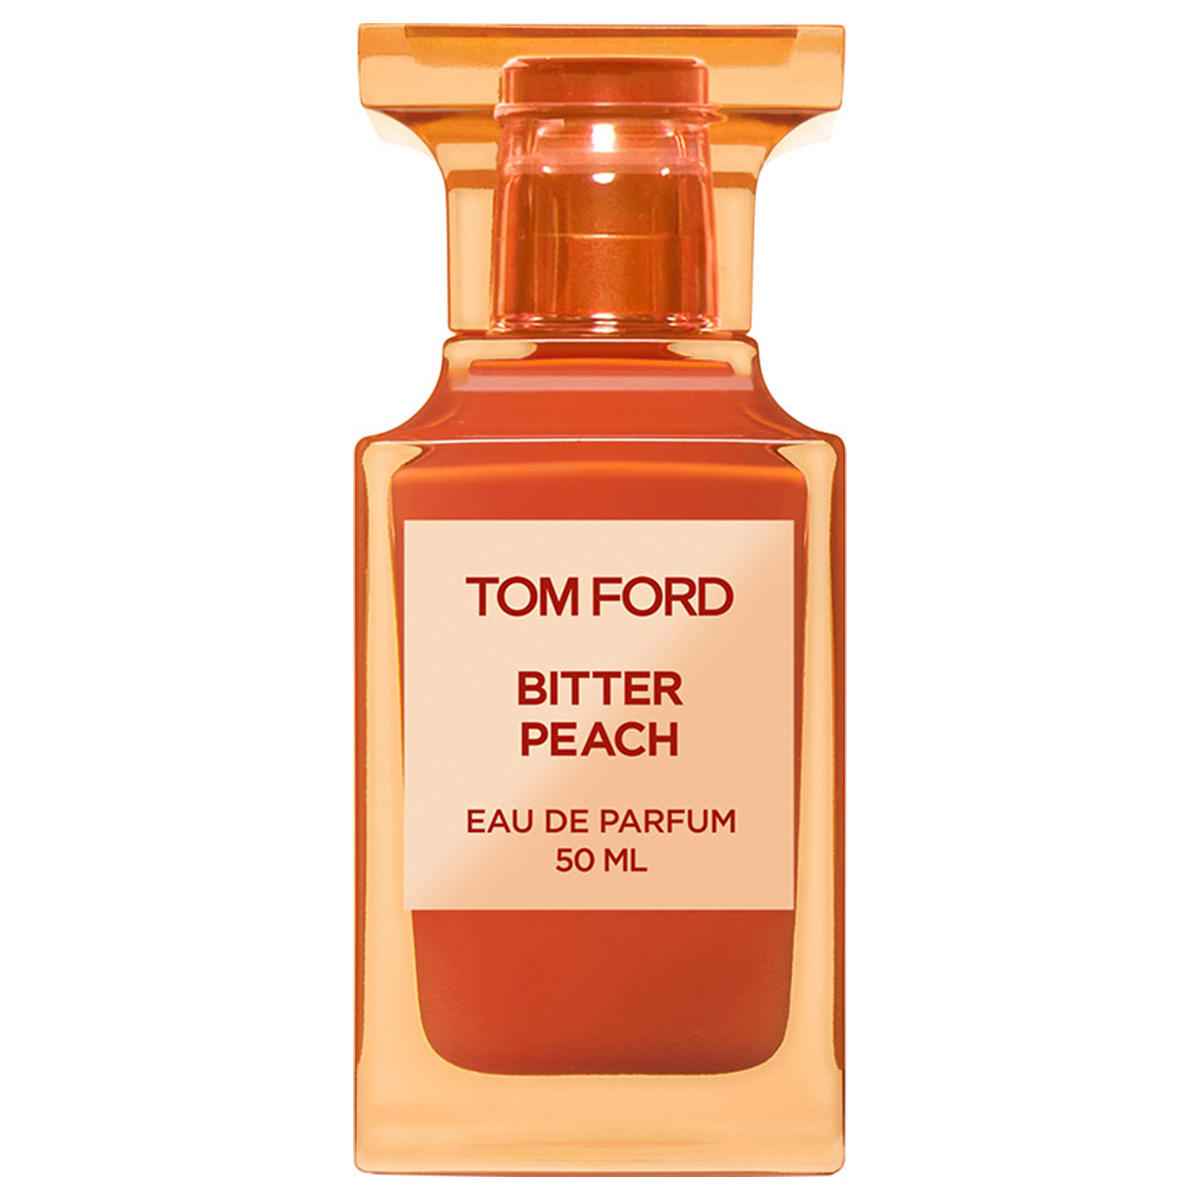 Tom Ford Bitter Peach Eau de Parfum 50 ml